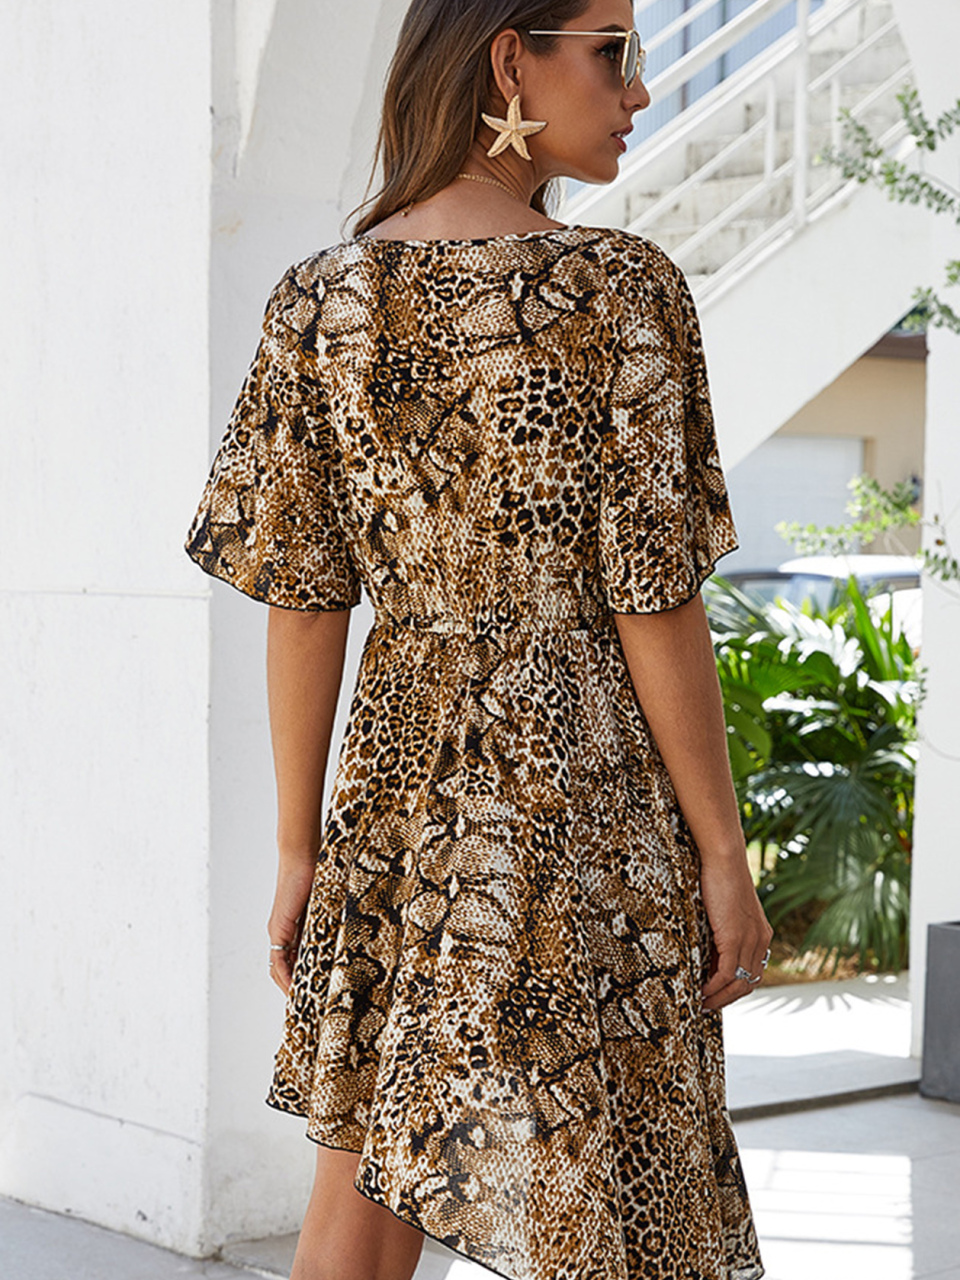 Women's Spring New Irregular Leopard Print Dress V-Neck Skirt